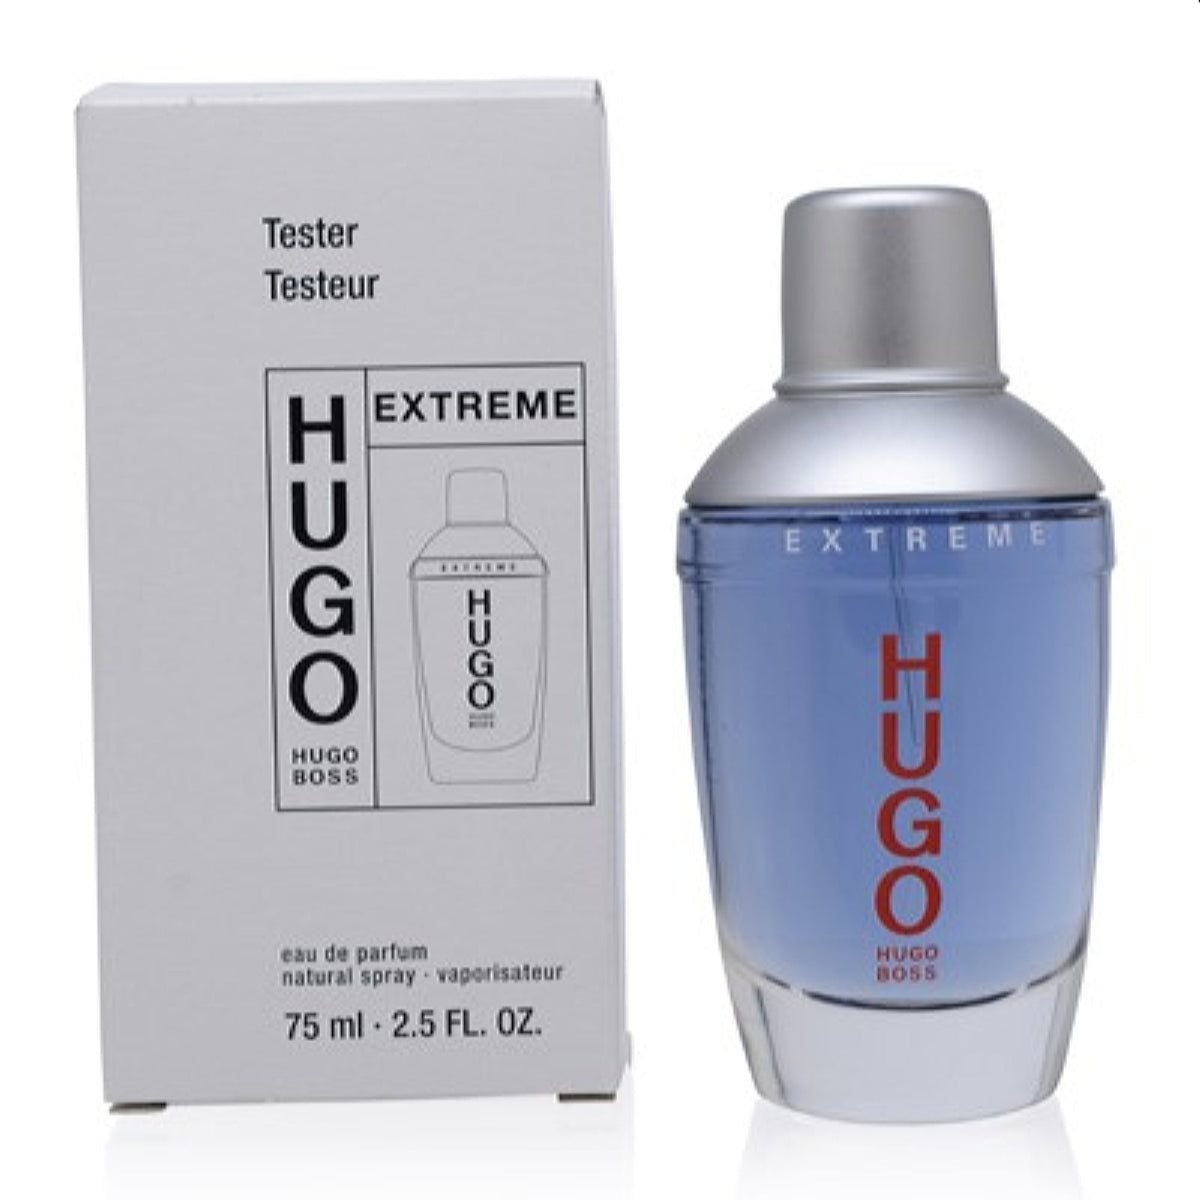 Hugo Green Man Extreme Hugo Boss Edp Spray Tester 2.5 Oz (75 Ml) For Men  